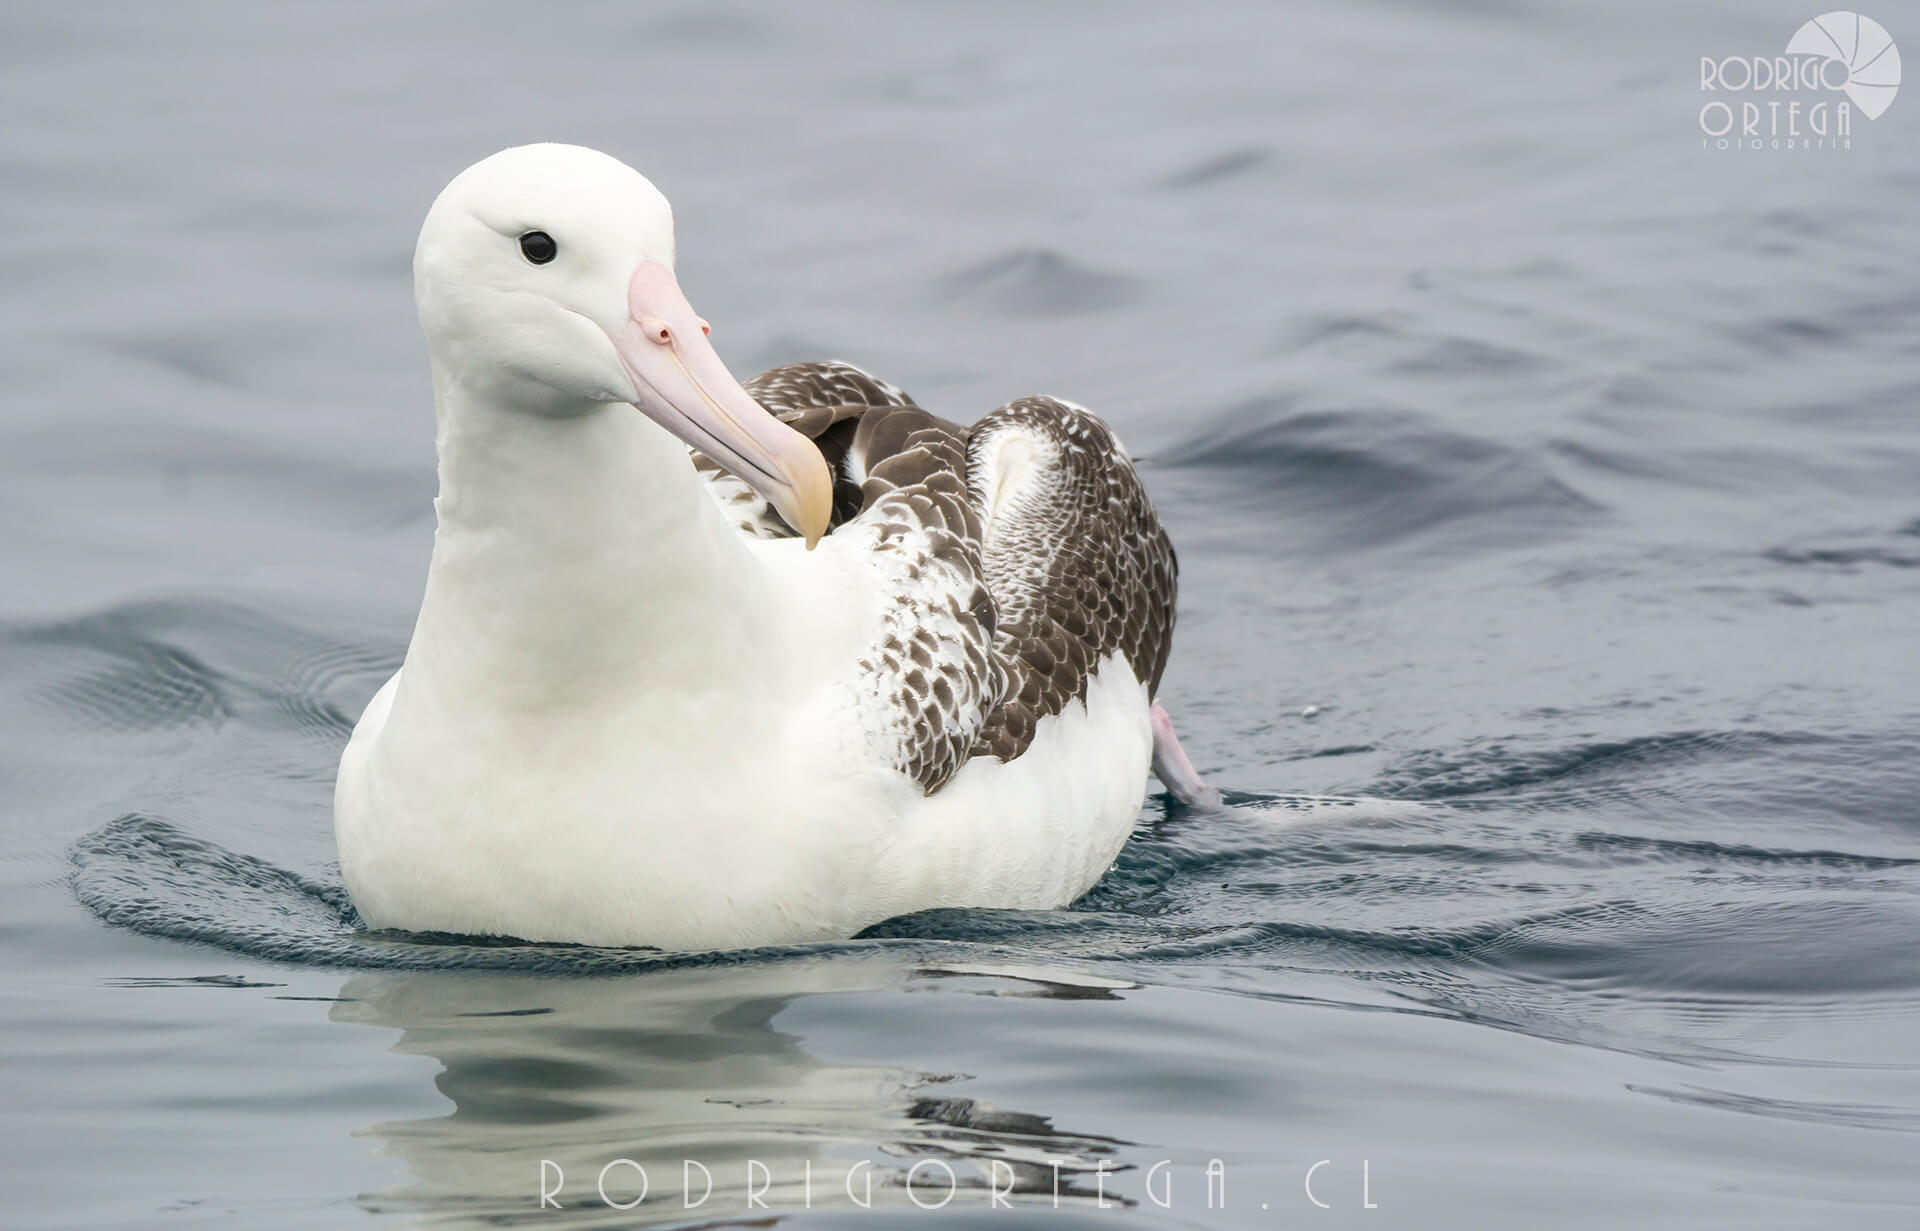 Albatros real del sur 2 Rodrigo Ortega - Naturaleza & Outdoor Albatros real del sur 2